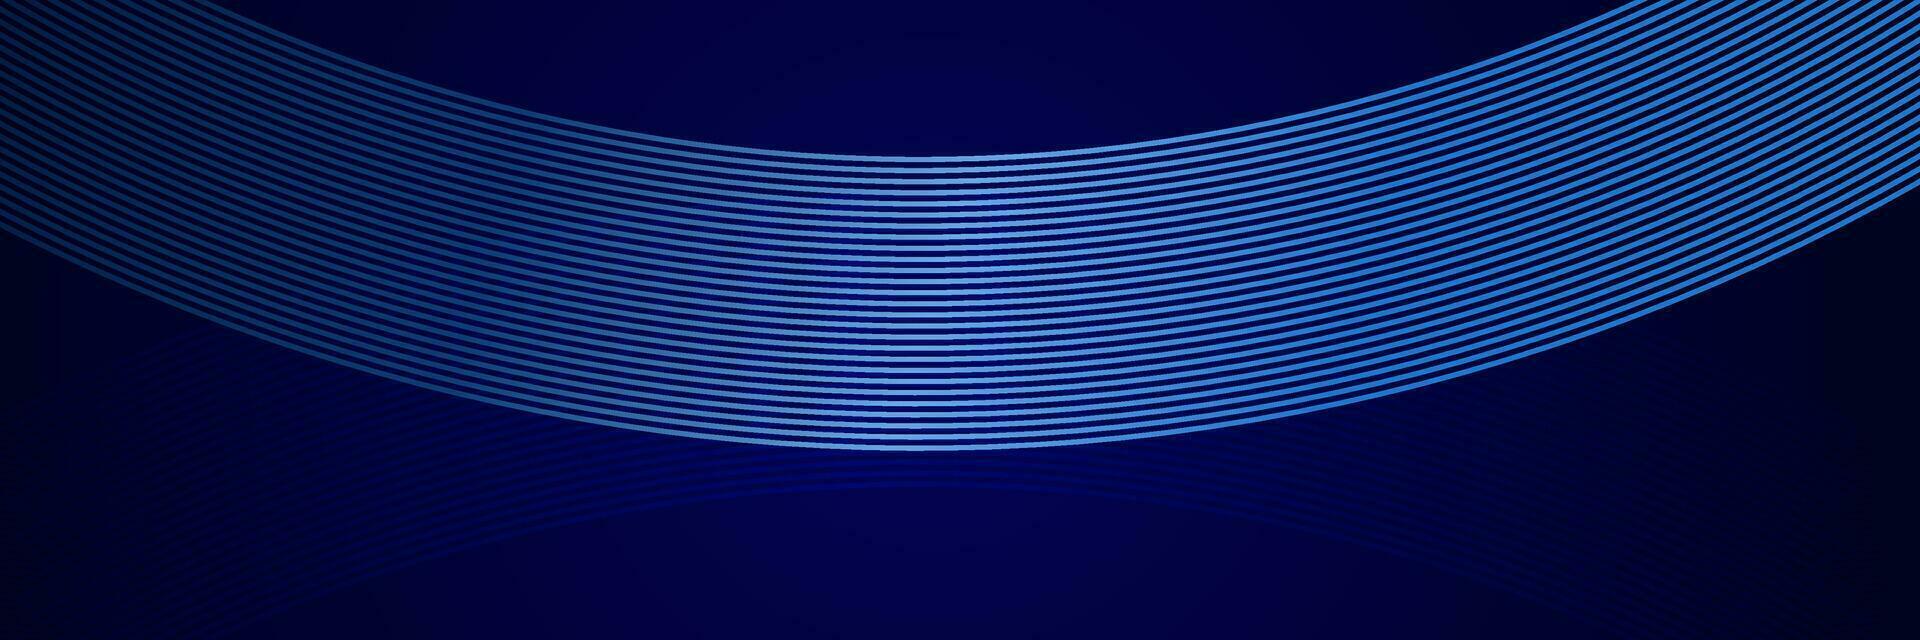 abstrakter hintergrund mit leuchtenden linien vektor